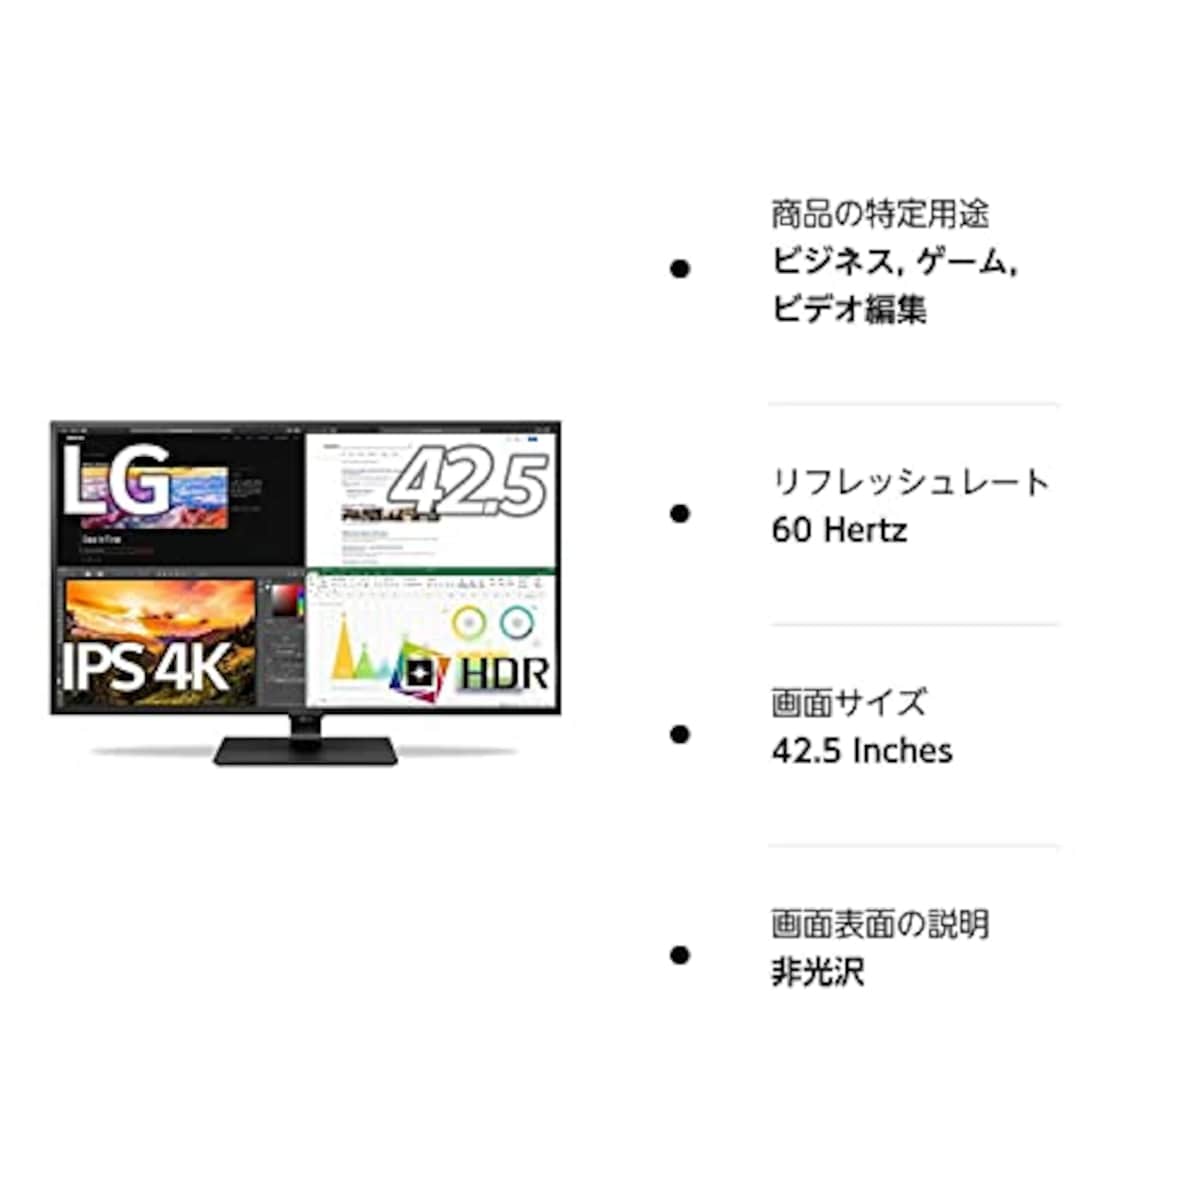  LG モニター ディスプレイ 43UN700-BAJP 42.5インチ/4K/HDR対応/IPS非光沢/HDMI×4,DP,USB Type-C/スピーカー(10W×2)/ブルーライト低減、フリッカーセーフ/リモコン付属 /3年安心・無輝点保証画像7 